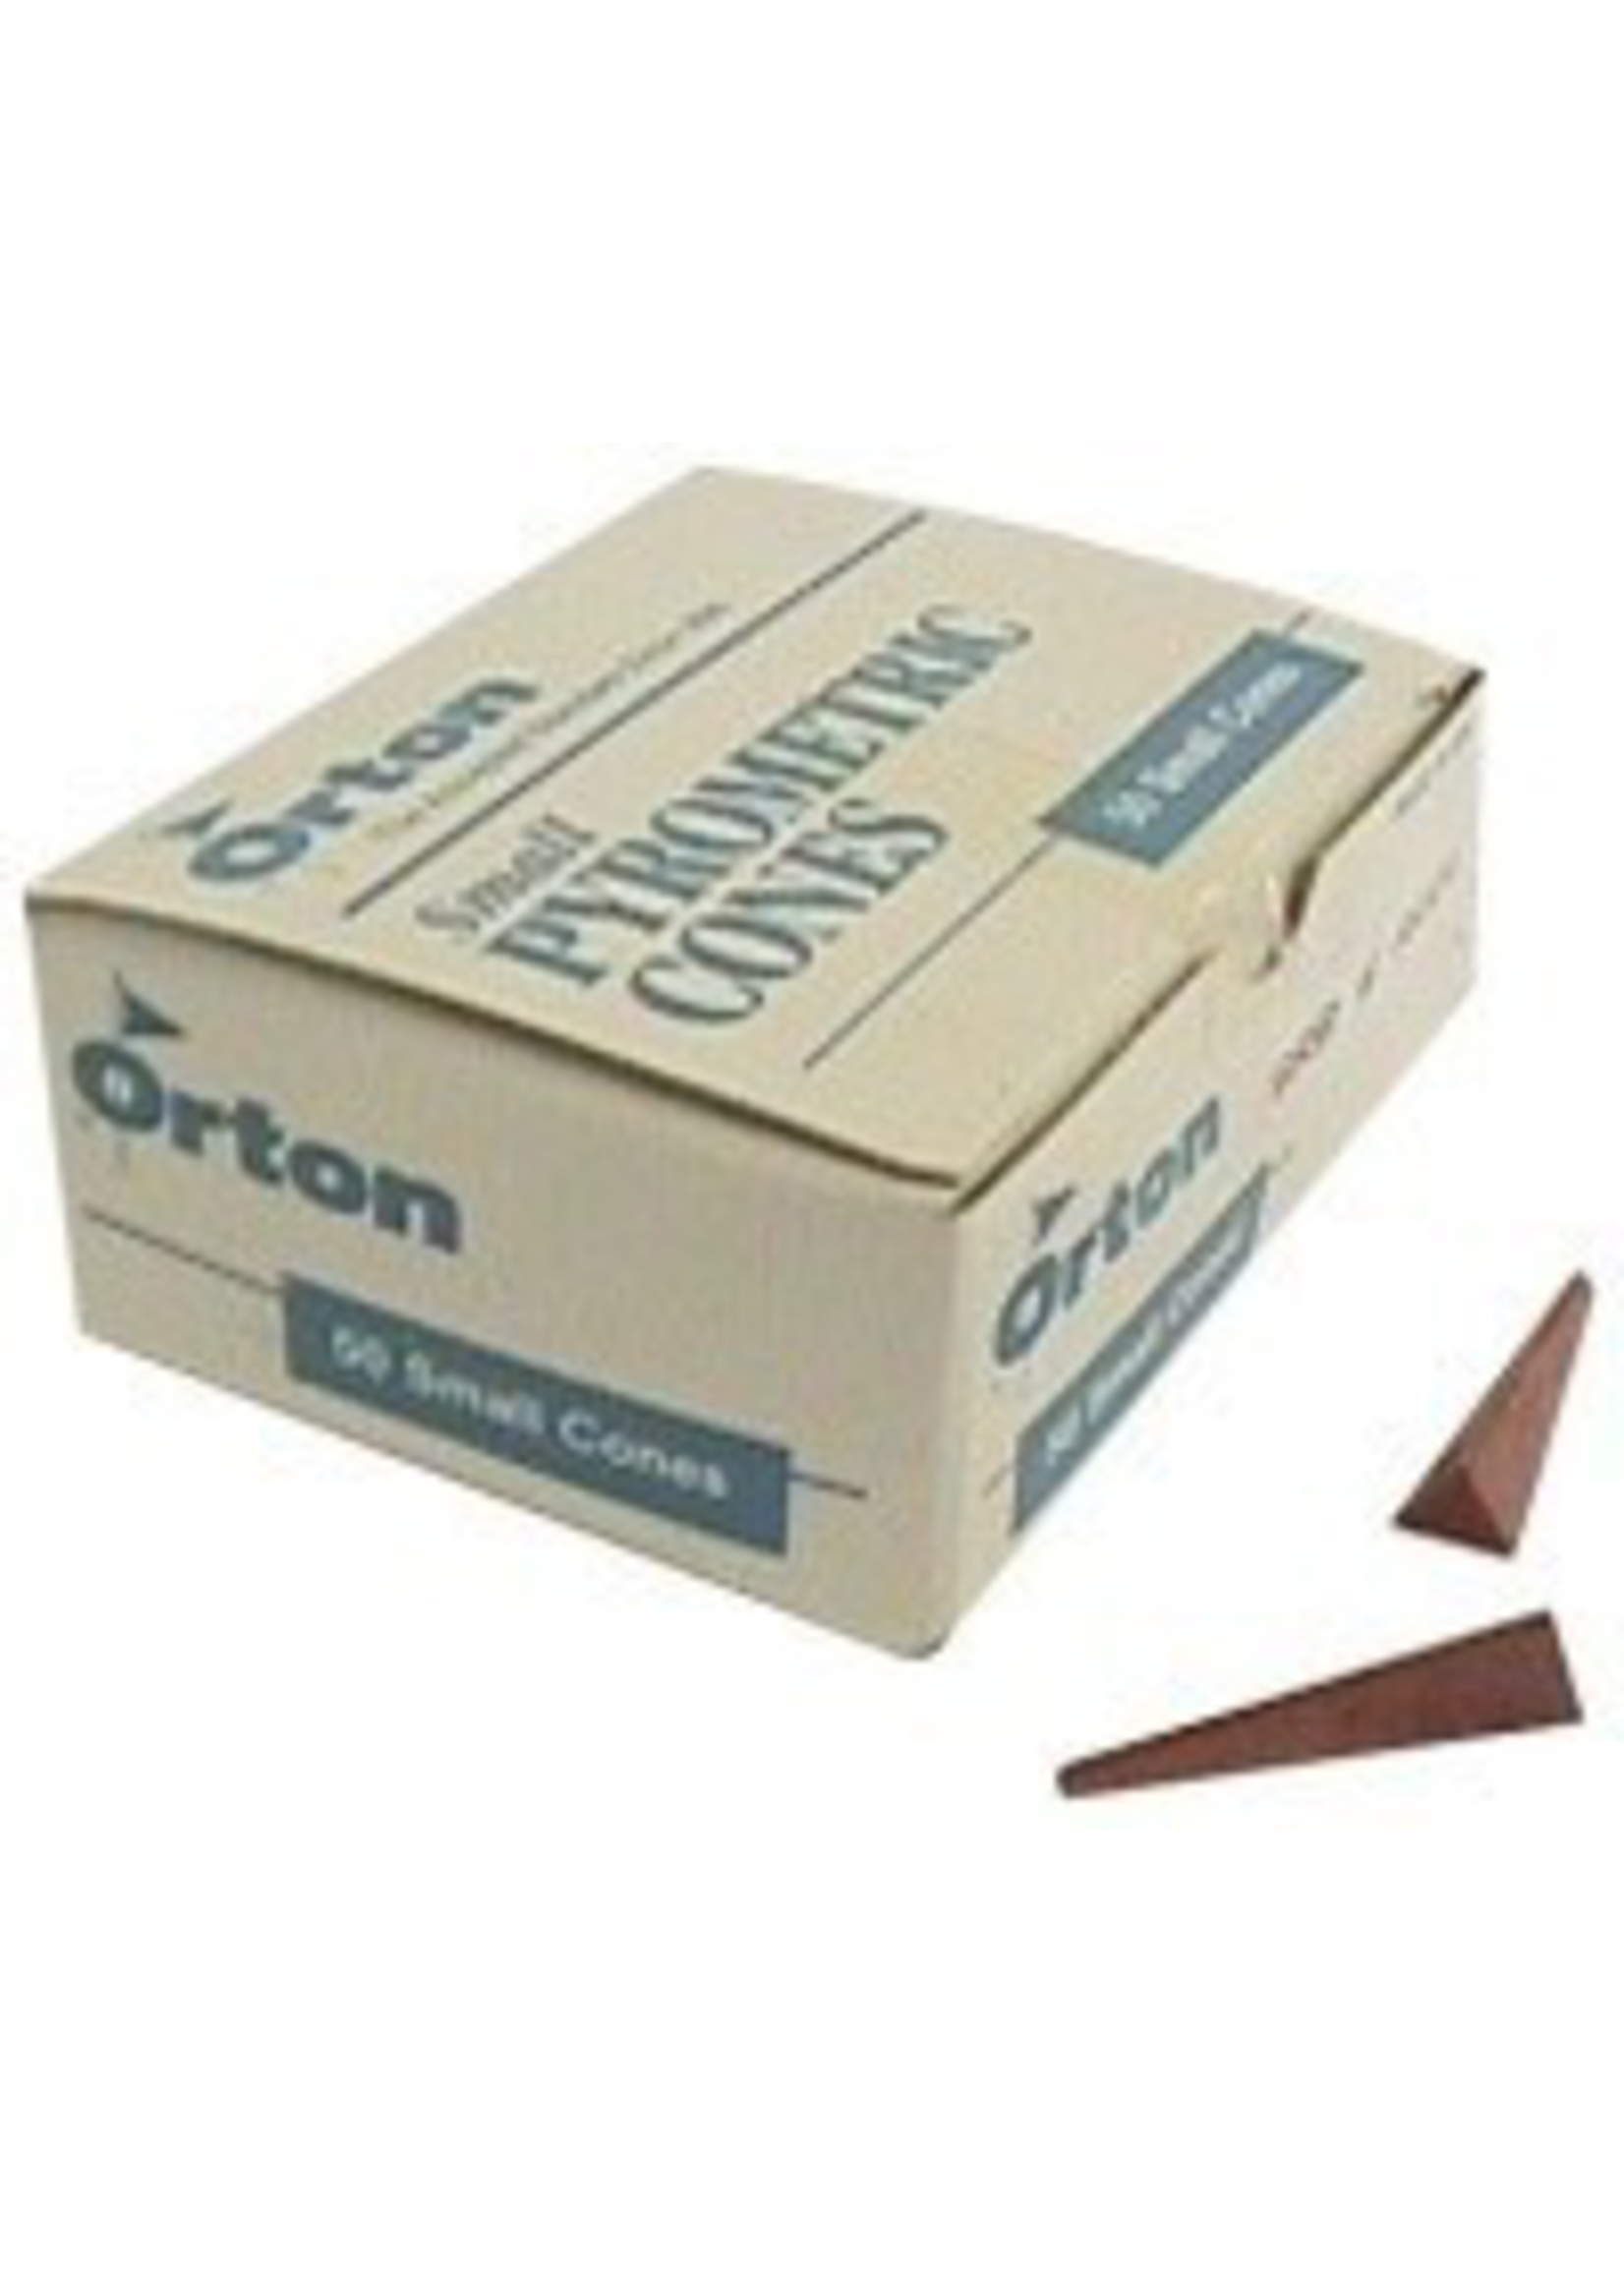 Orton small cone 8 (x50)